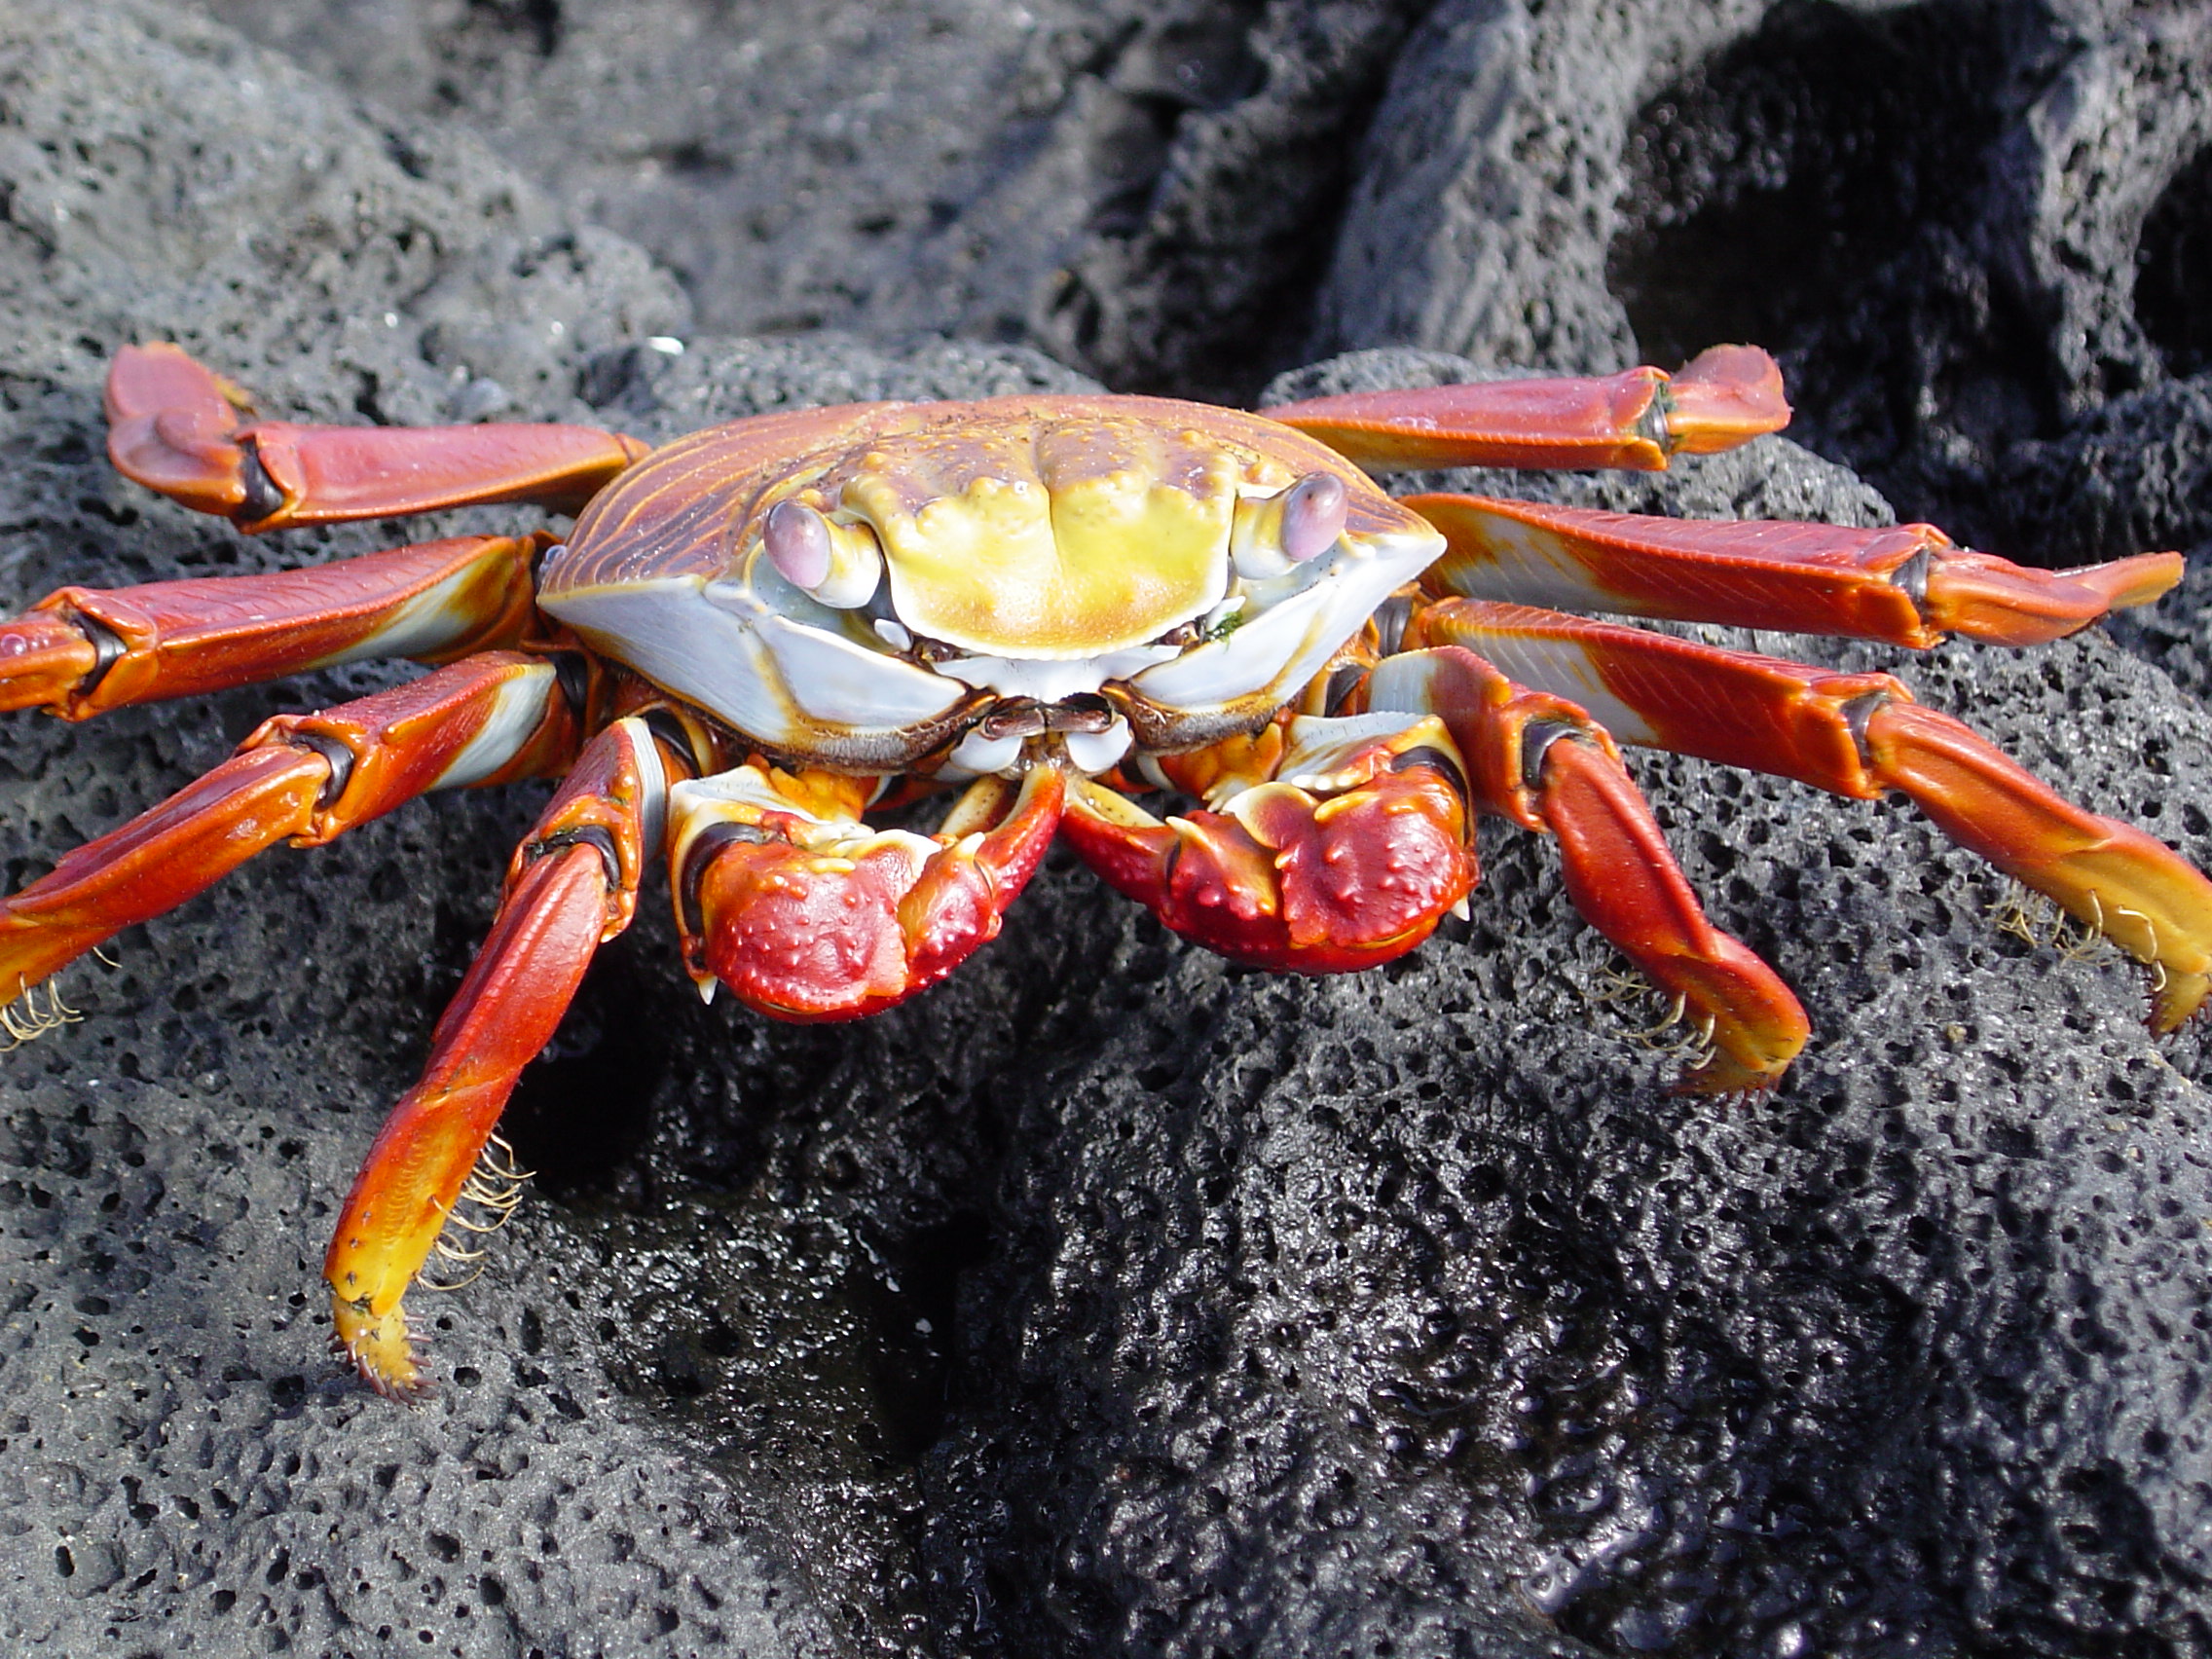 Galapagos Islands-Sally Lightfoot Crab